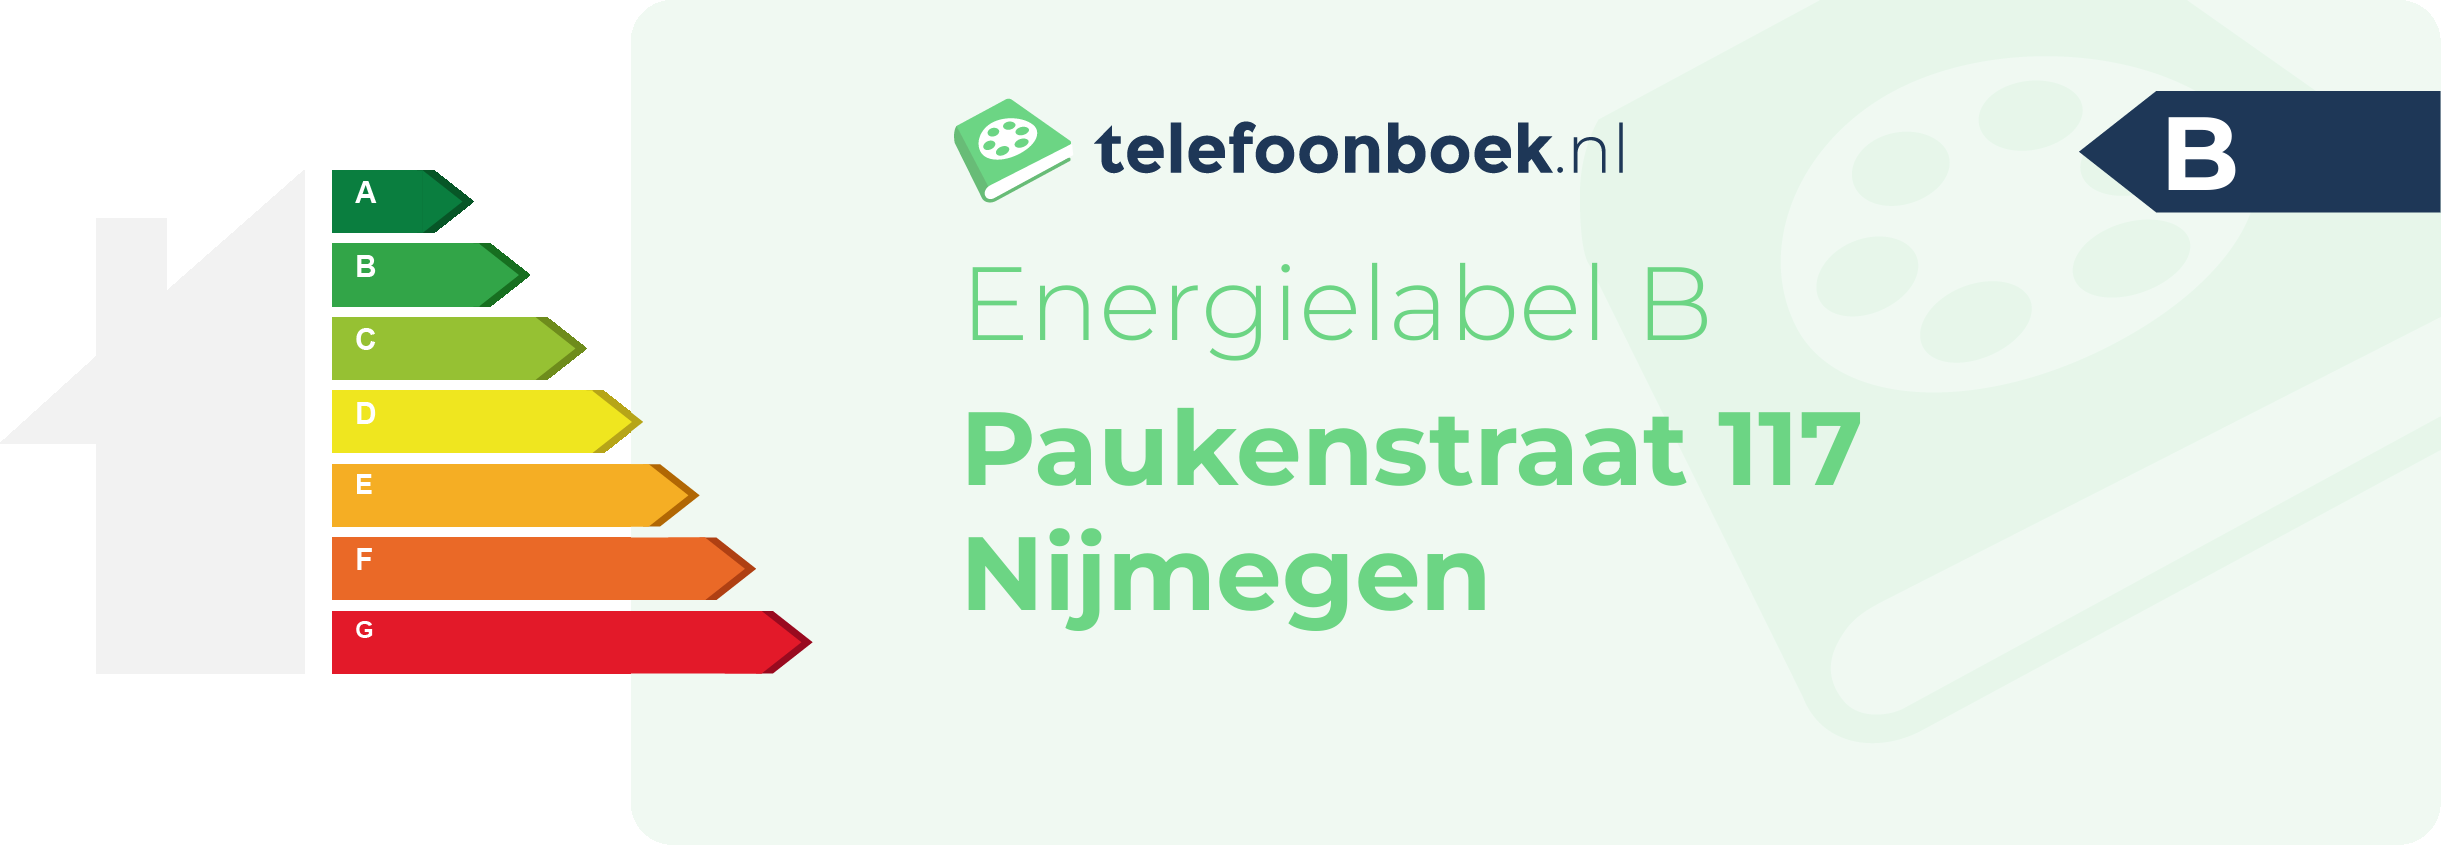 Energielabel Paukenstraat 117 Nijmegen